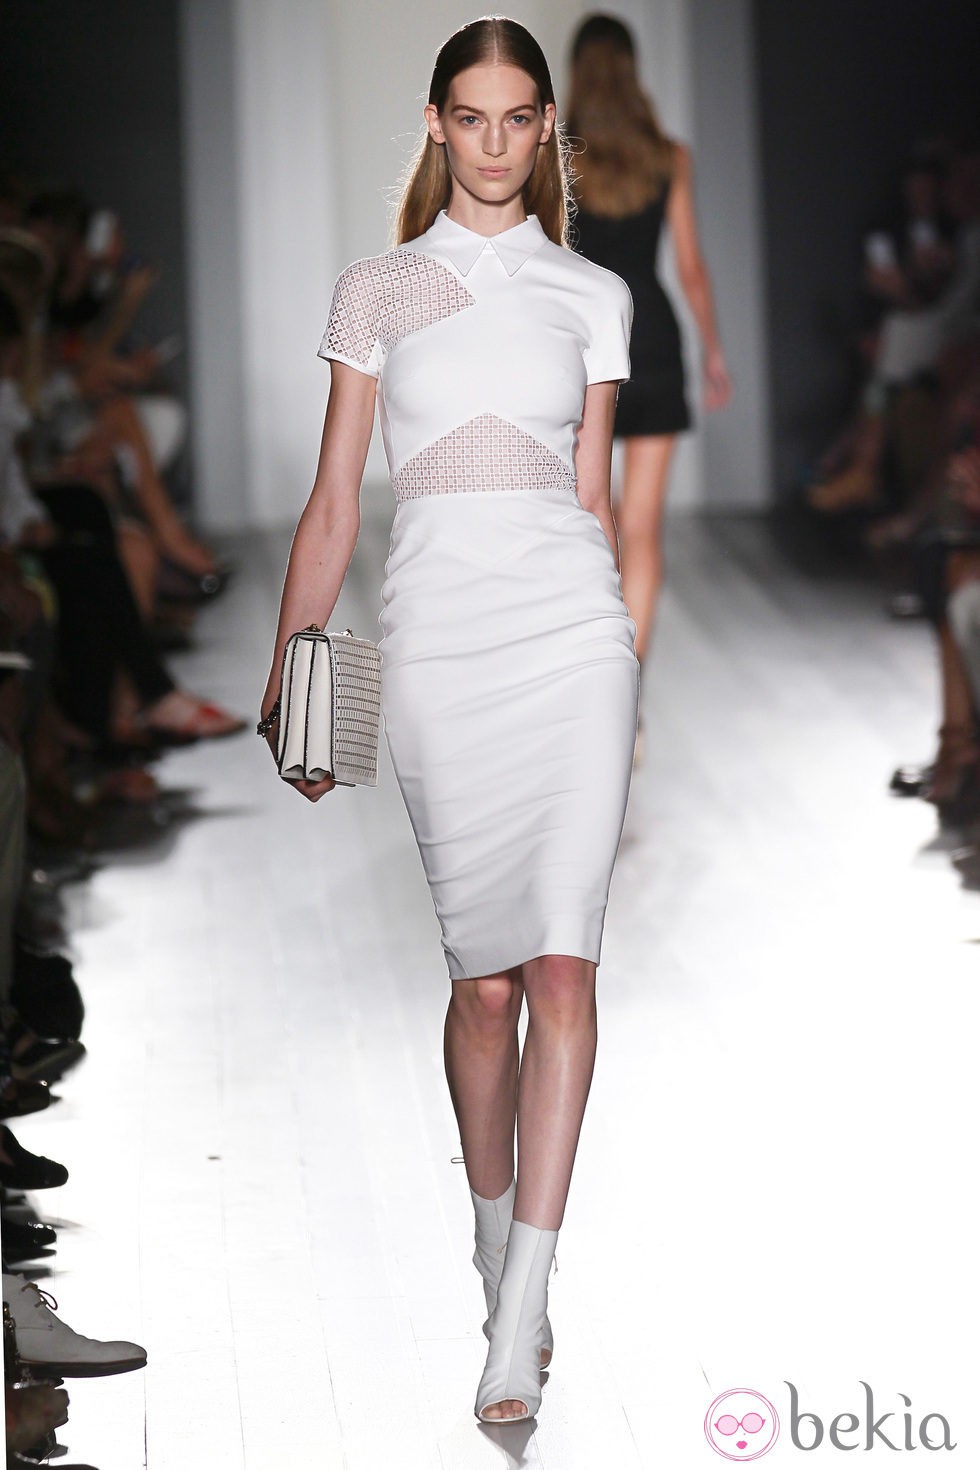 Vestido blanco de la colección primavera/verano 2013 de Victoria Beckham en la Nueva York Fashion Week